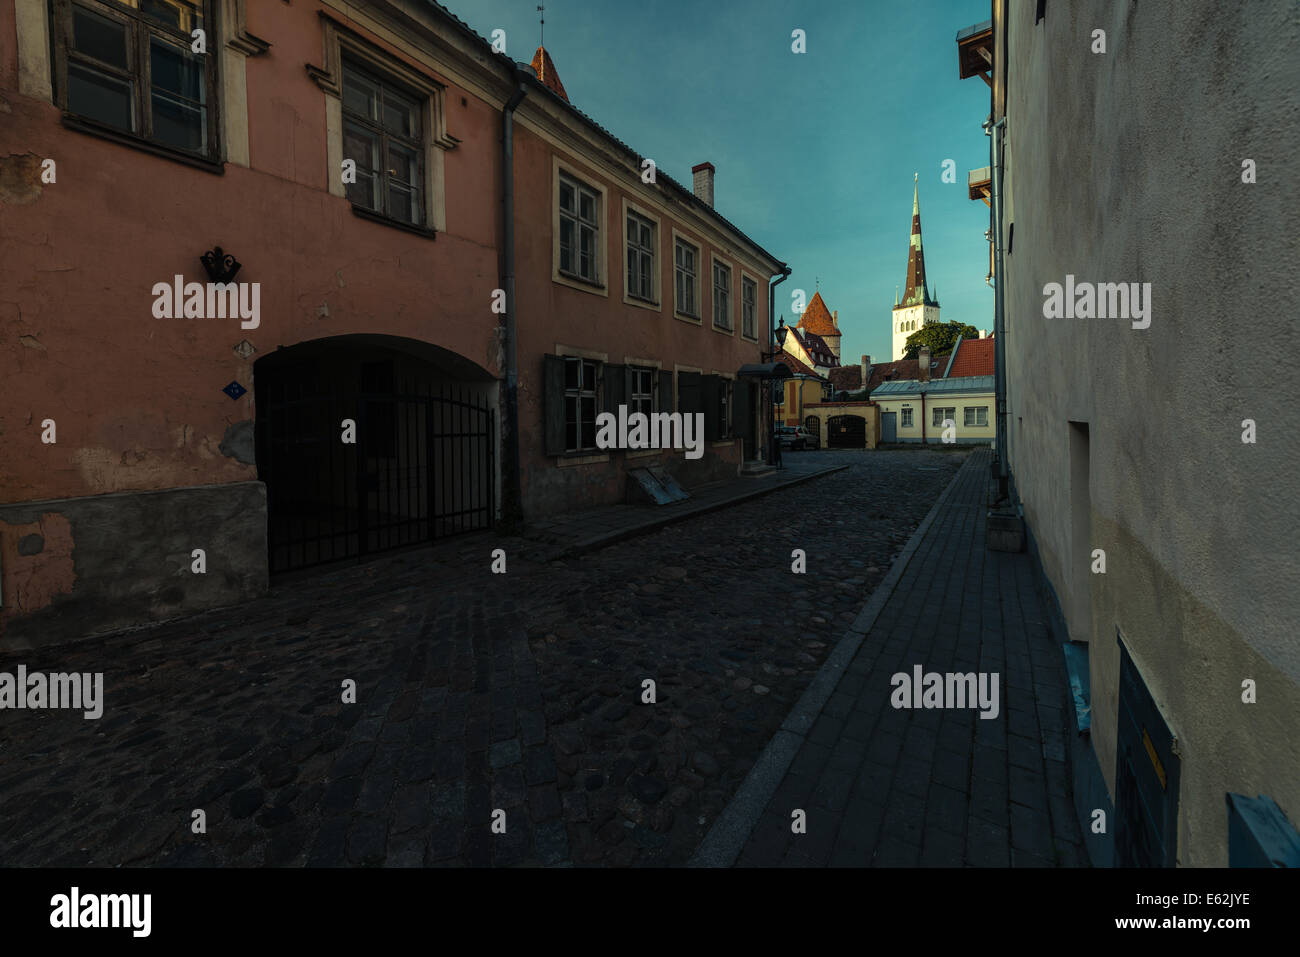 Street in Old Town Tallinn Stock Photo